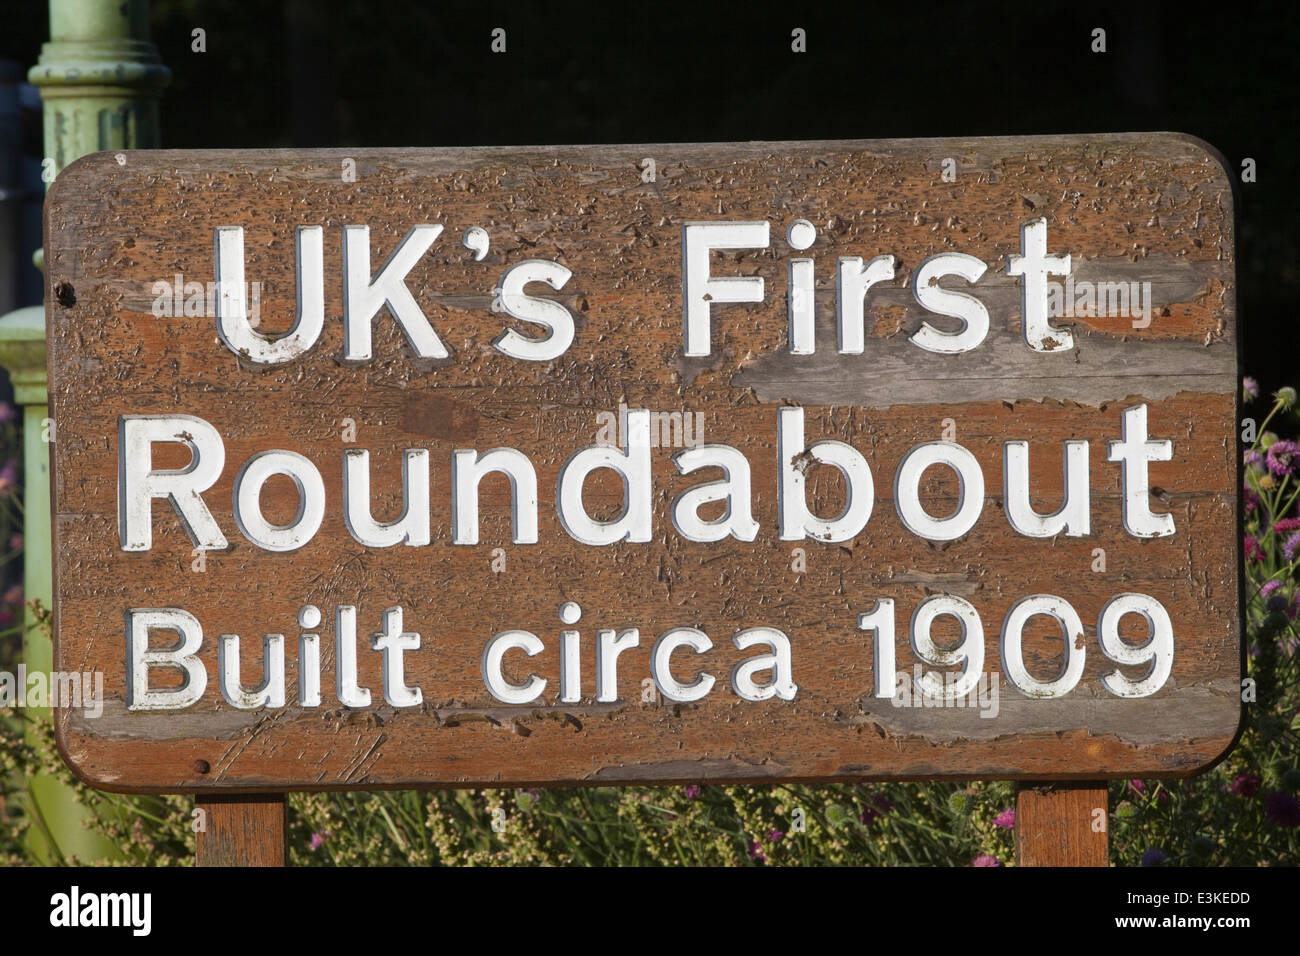 Britains primera rotonda construida en c.1909, Letchworth Garden City, Hertfordshire, Reino Unido. Foto de stock